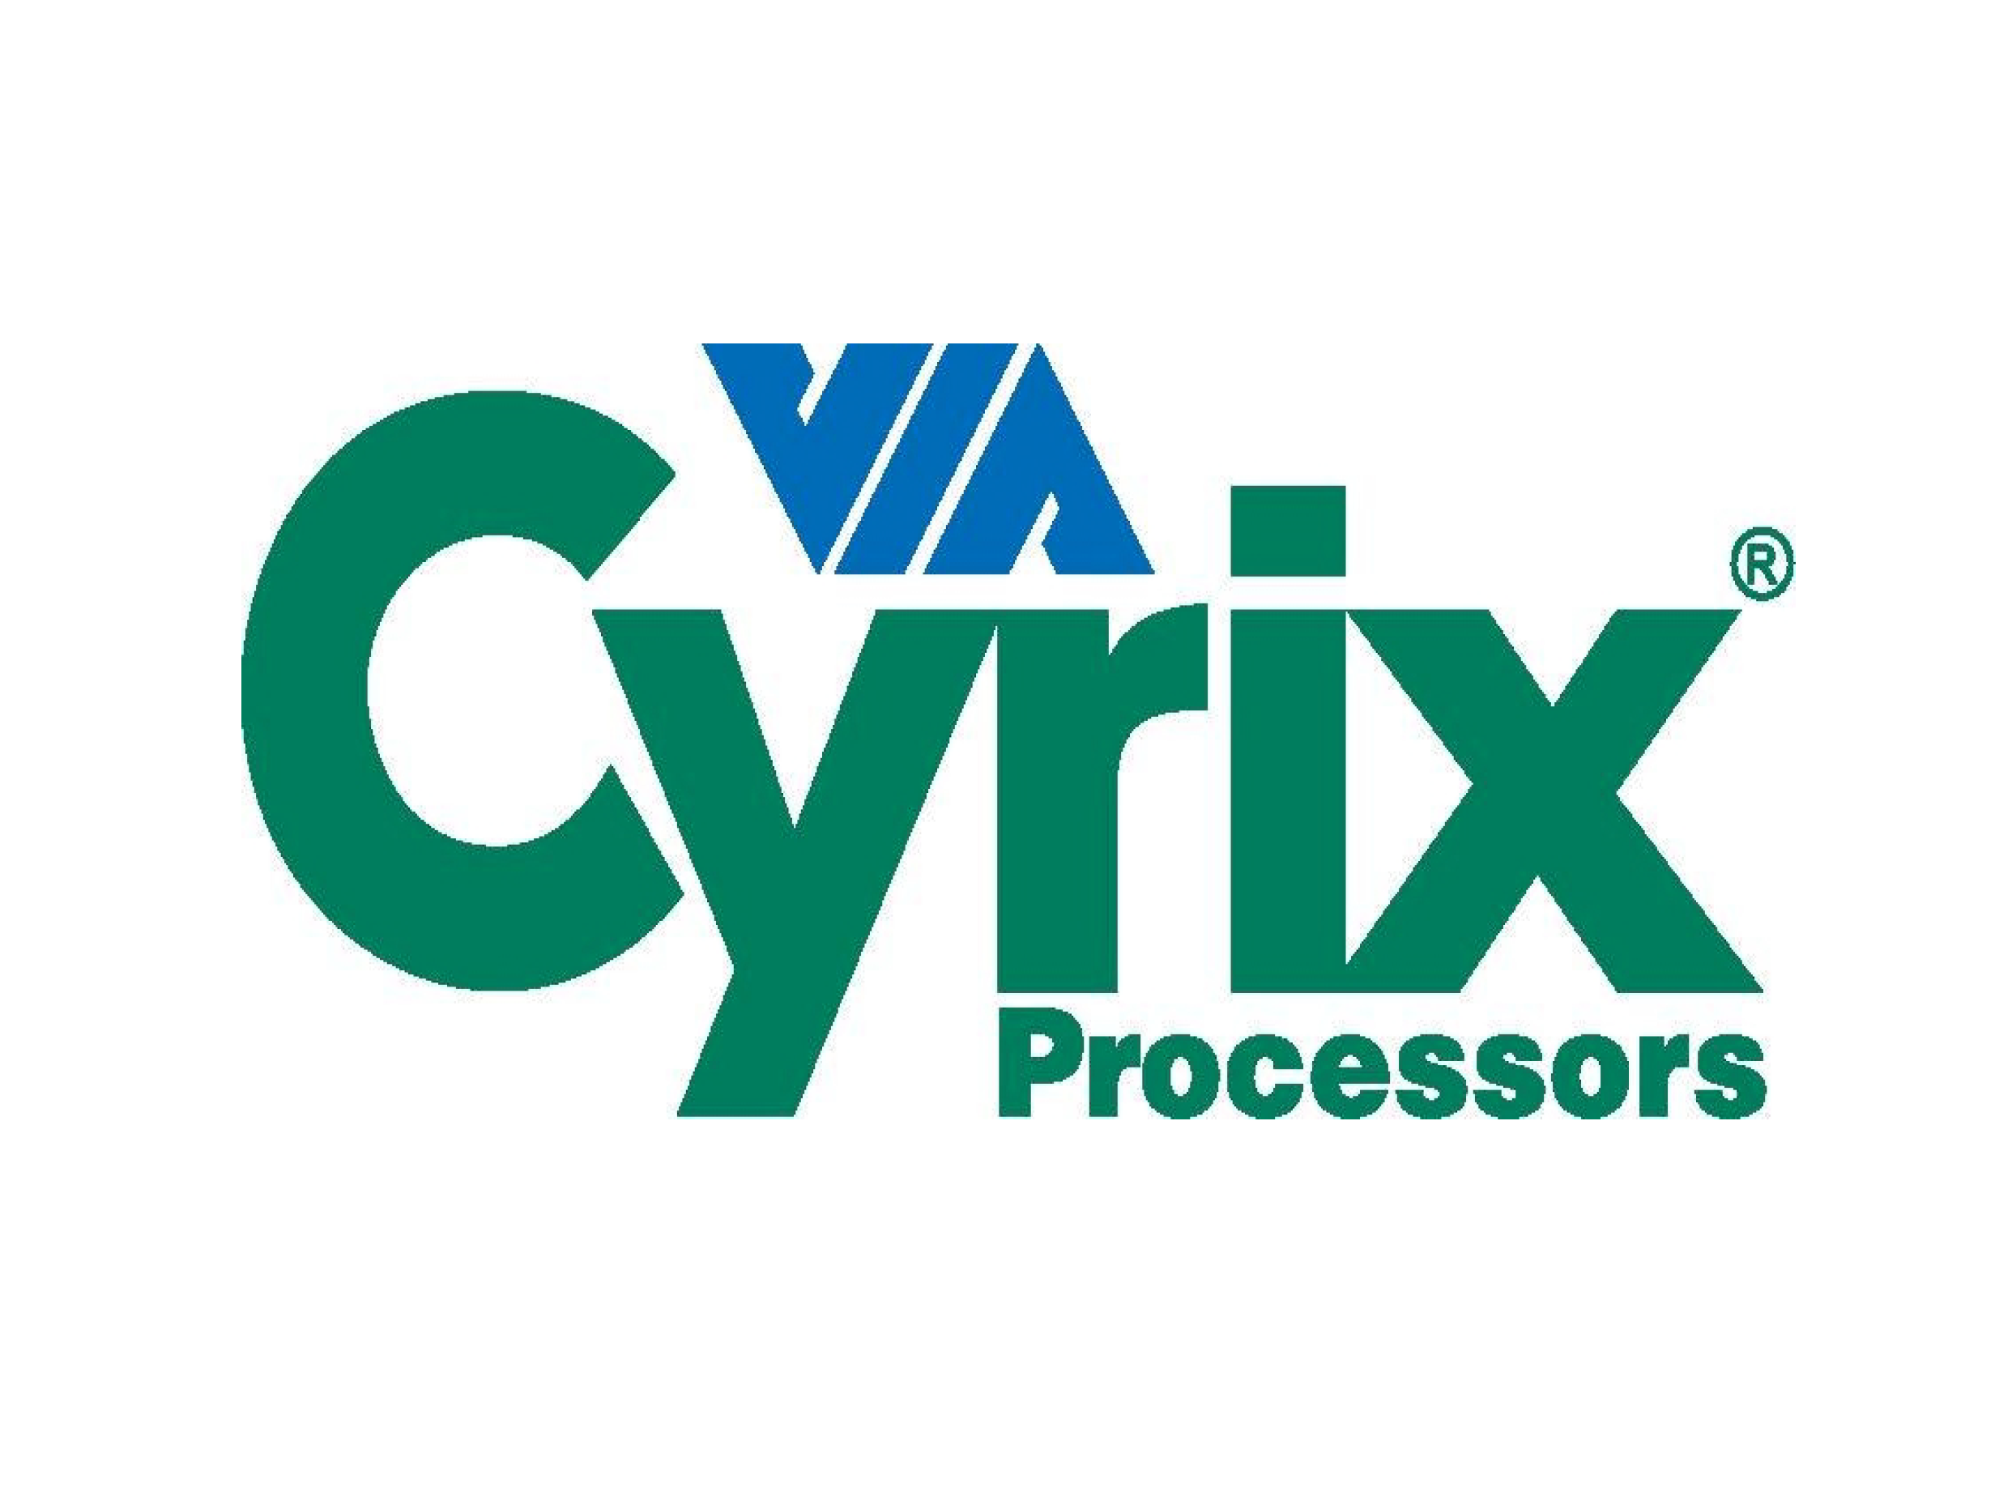 照片中提到了VA .、Cyrix、(R，跟西里克斯有關，包含了西里克斯、西里克斯三世、中央處理器、微處理器、威盛C3